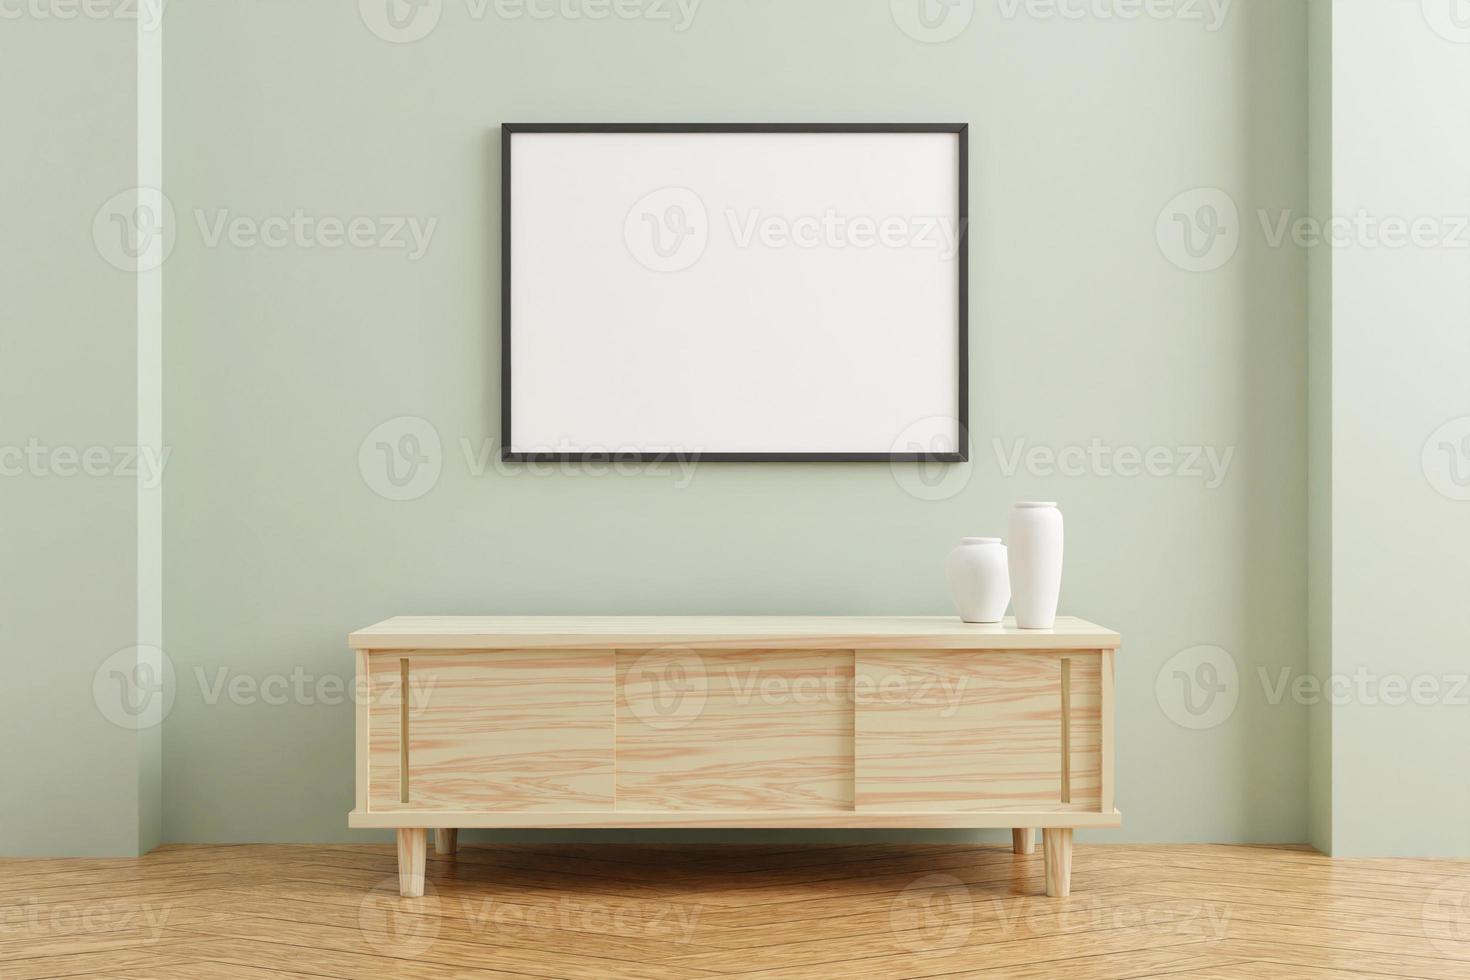 svart horisontell affischram mockup på träbord i vardagsrumsinteriör på tom pastellfärgad väggbakgrund. 3d-rendering. foto